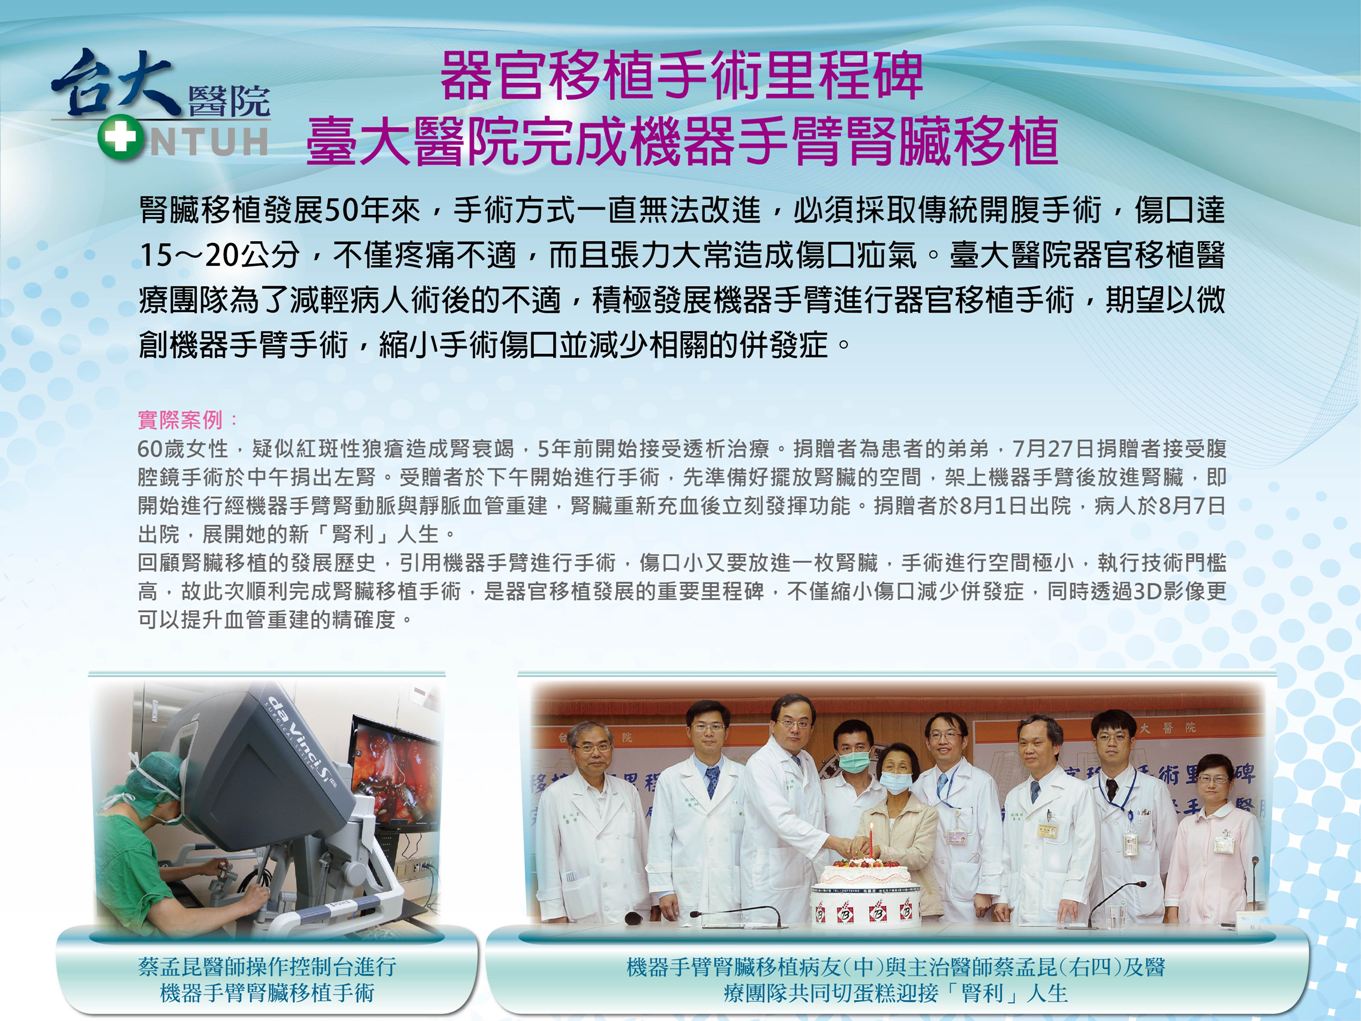 台大醫院完成機器手臂腎臟移植